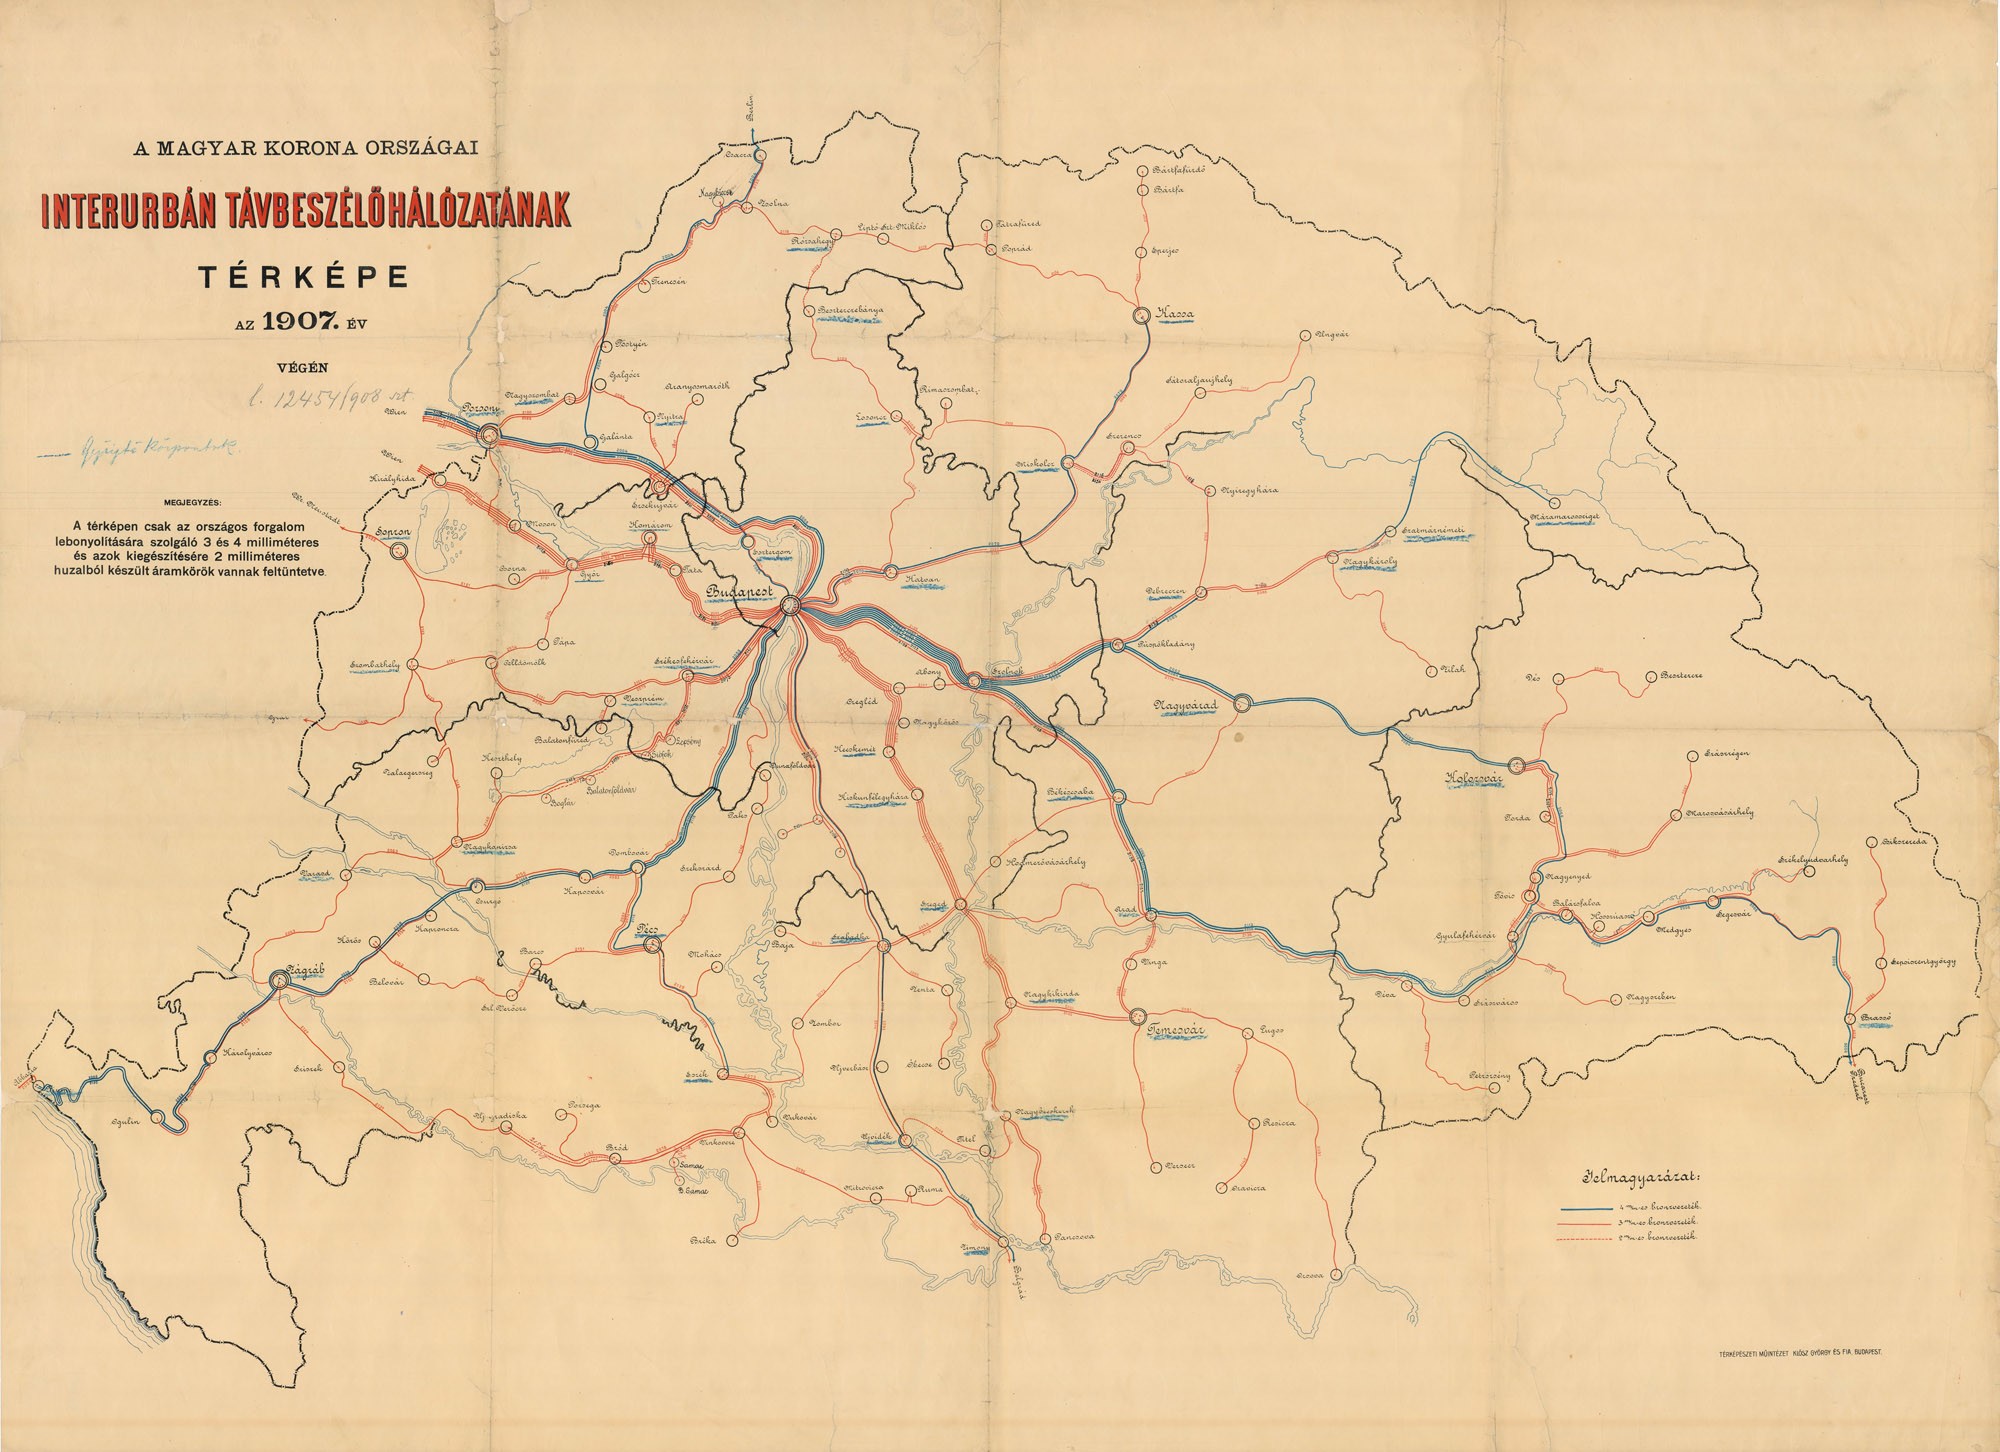 A Magyar Korona országai interurbán távbeszélő-hálózatának térképe az 1907. év végén (Postamúzeum CC BY-NC-SA)